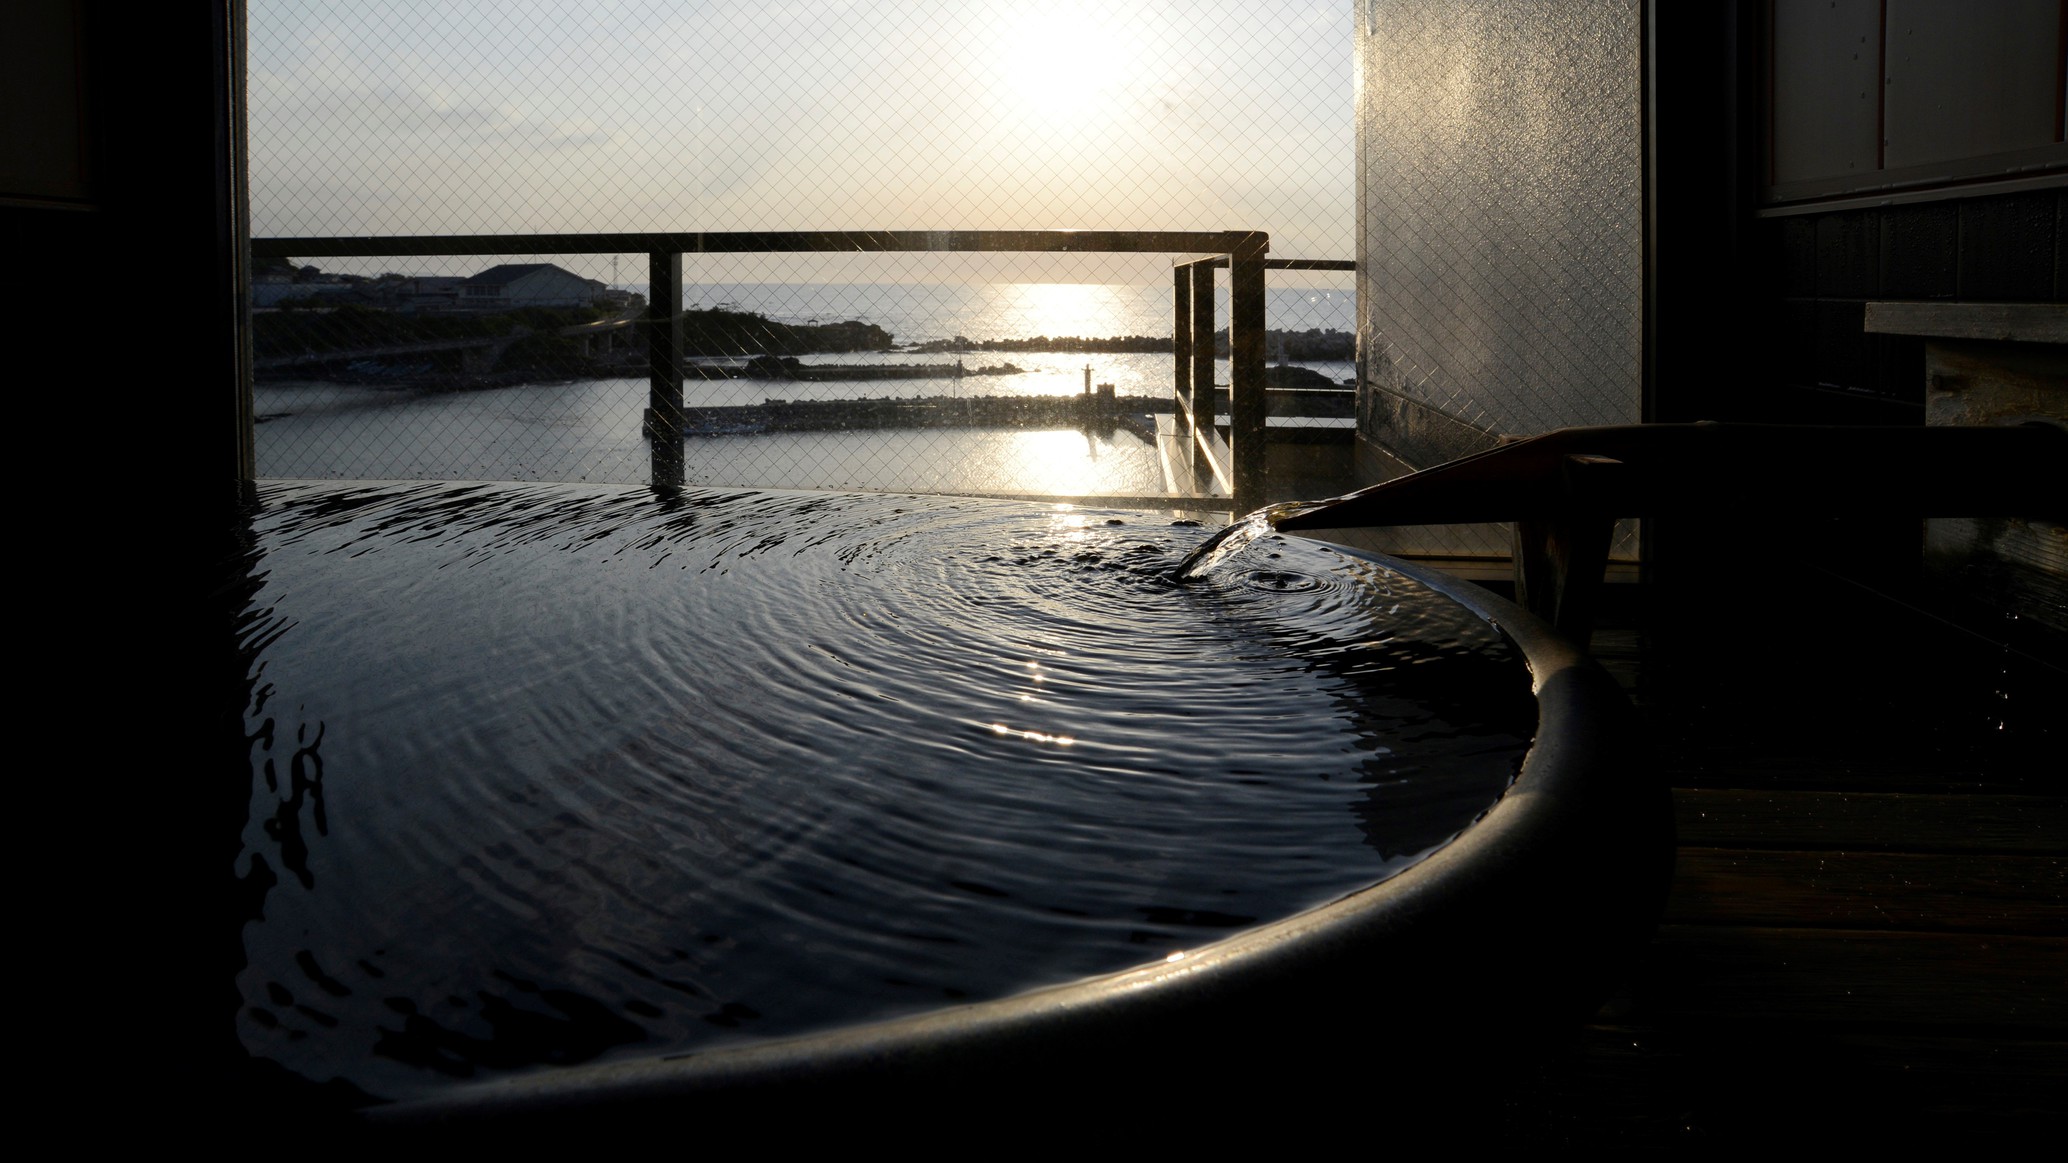 【客室展望風呂】客室の展望風呂からも美しい日本海に沈む夕景を眺めて…;